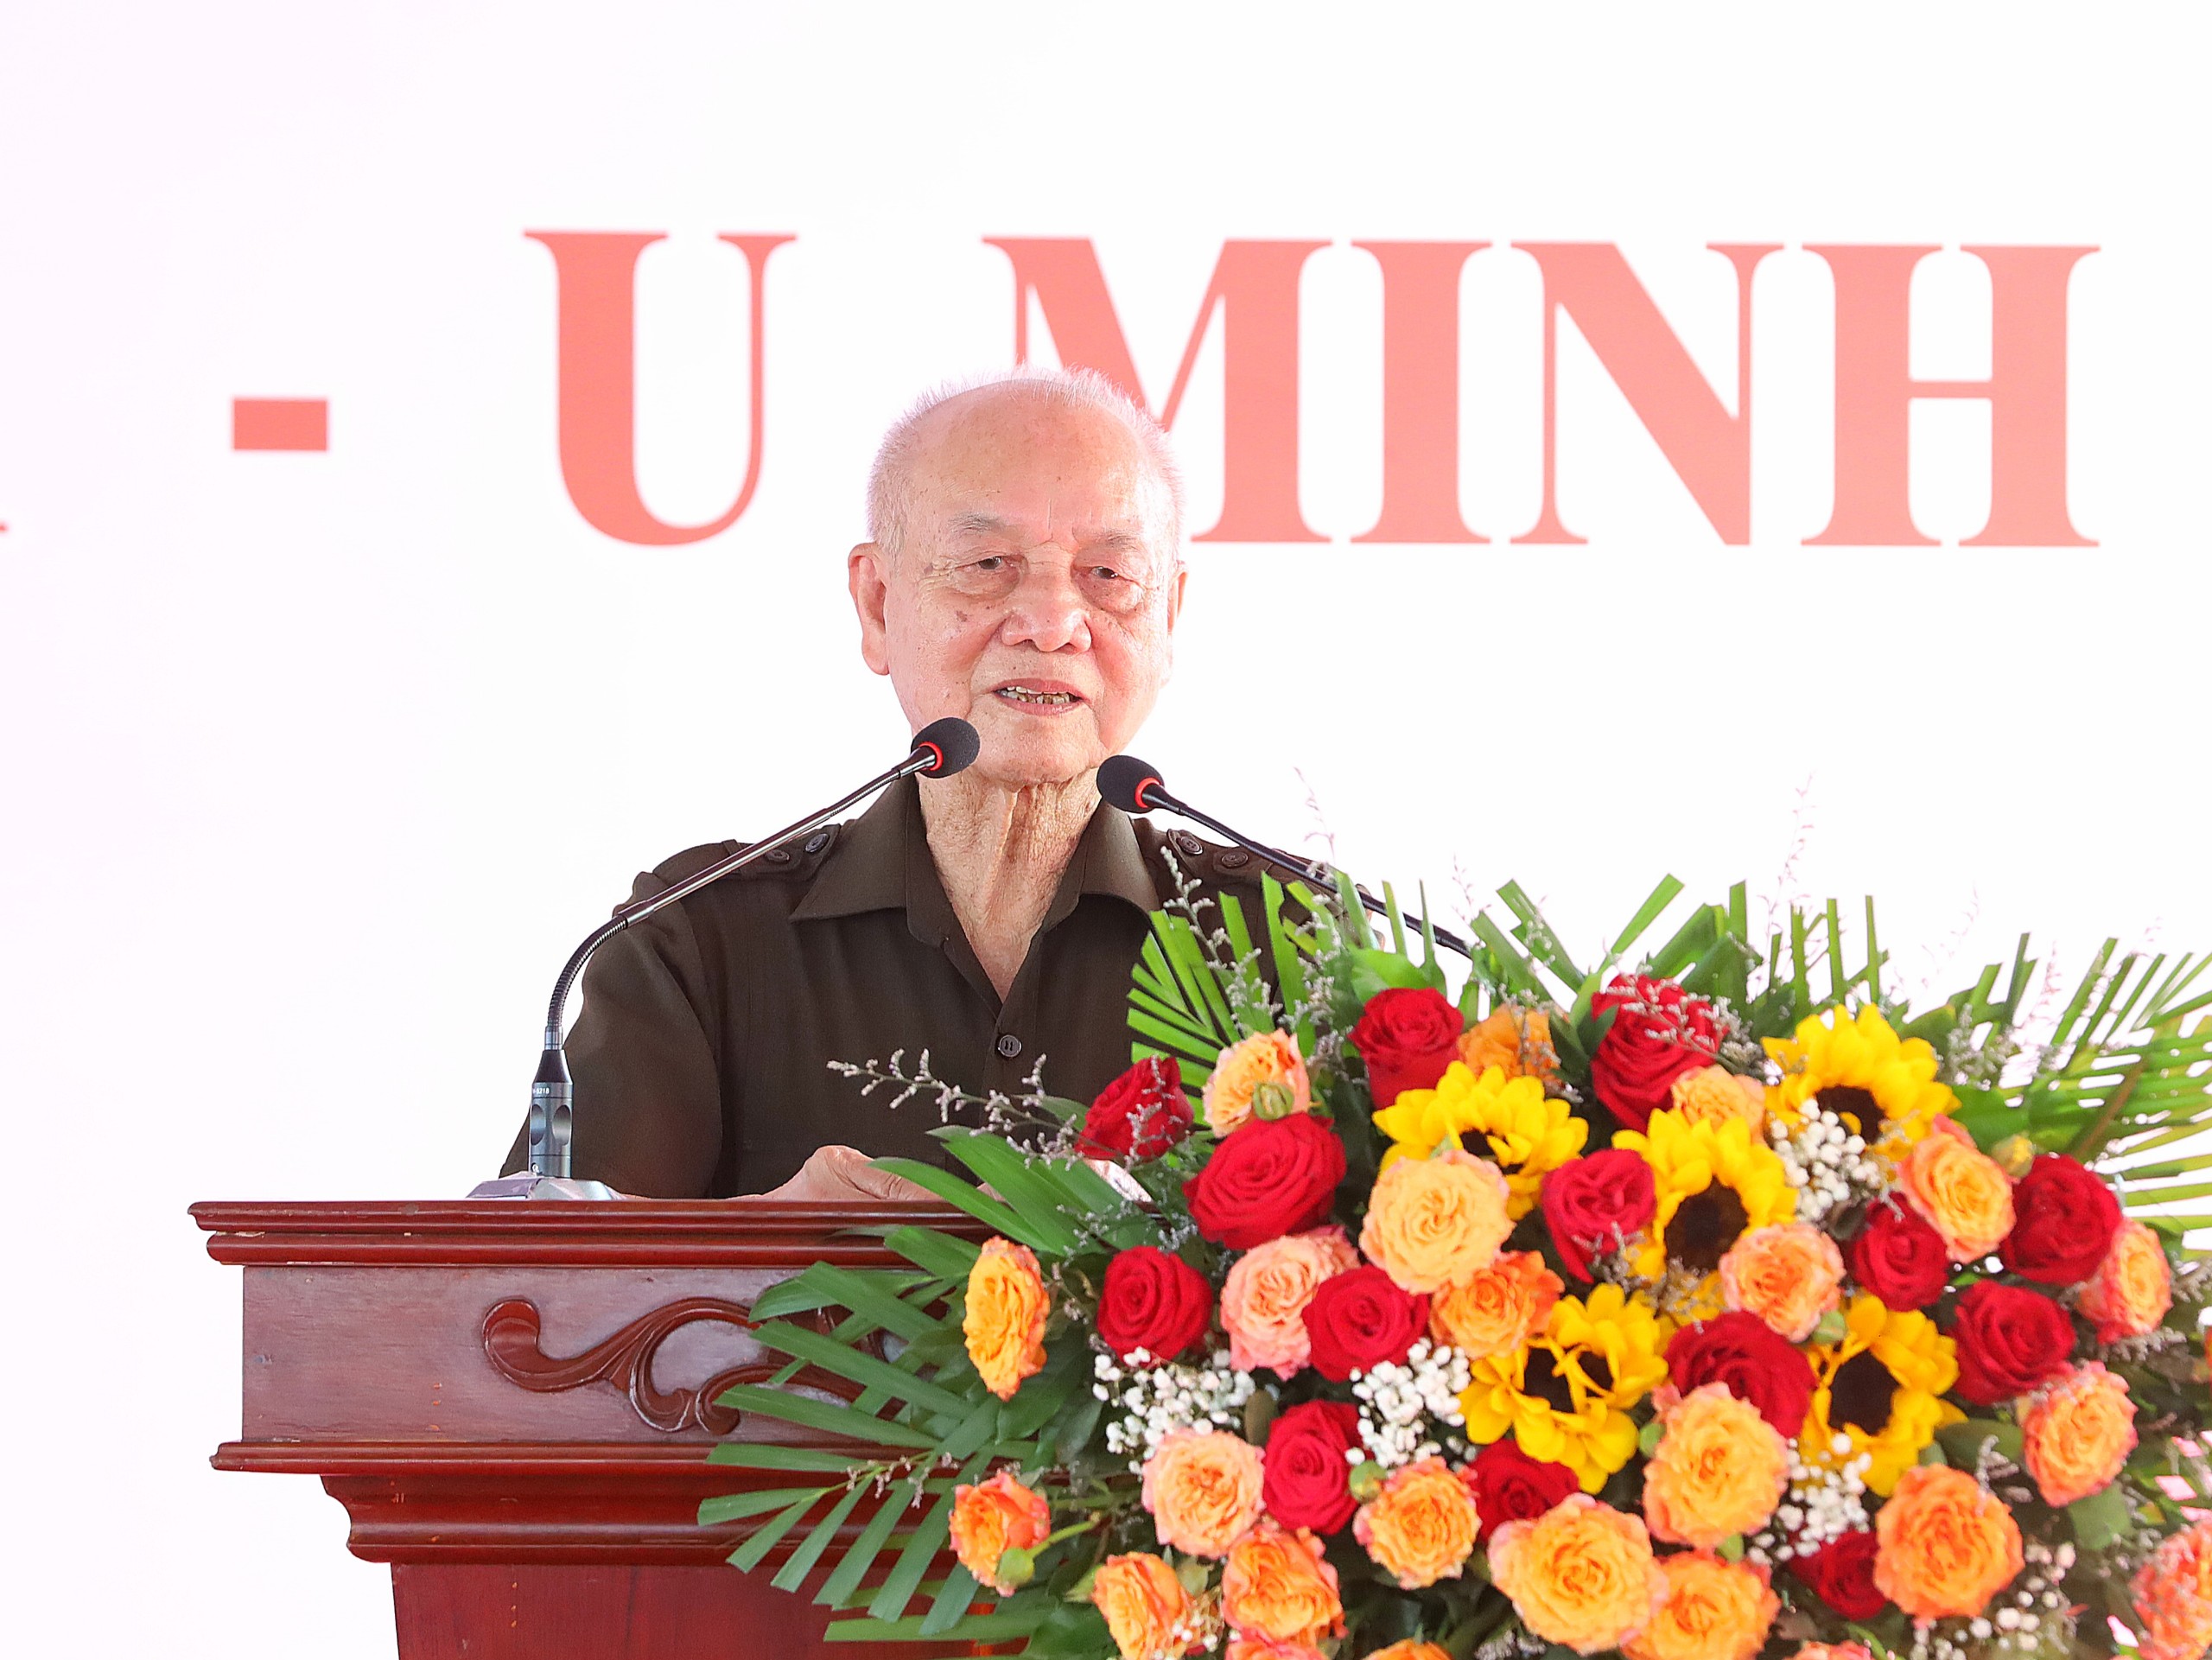 Đại tướng Phạm Văn Trà, Anh hùng LLVT nhân dân, nguyên Ủy viên Bộ Chính trị, nguyên Bộ trưởng Bộ Quốc phòng phát biểu ôn lại truyền thống anh hùng của Trung đoàn 1 - U Minh.